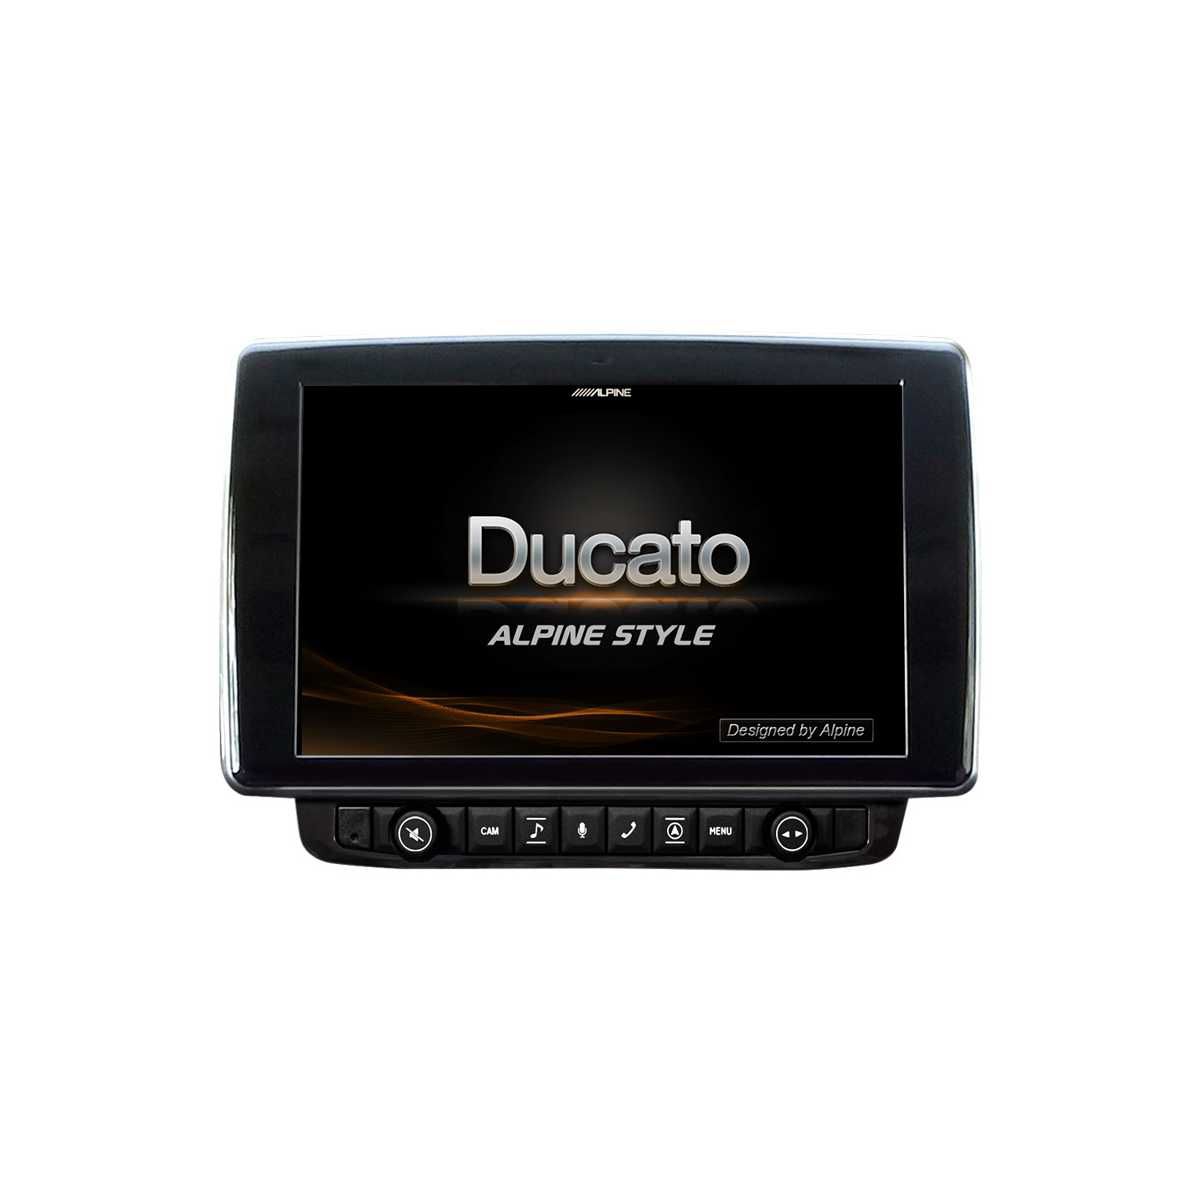 ALPINE Digital-Media-Station Fiat Ducato Bj. 2006-2021 X903D-DU